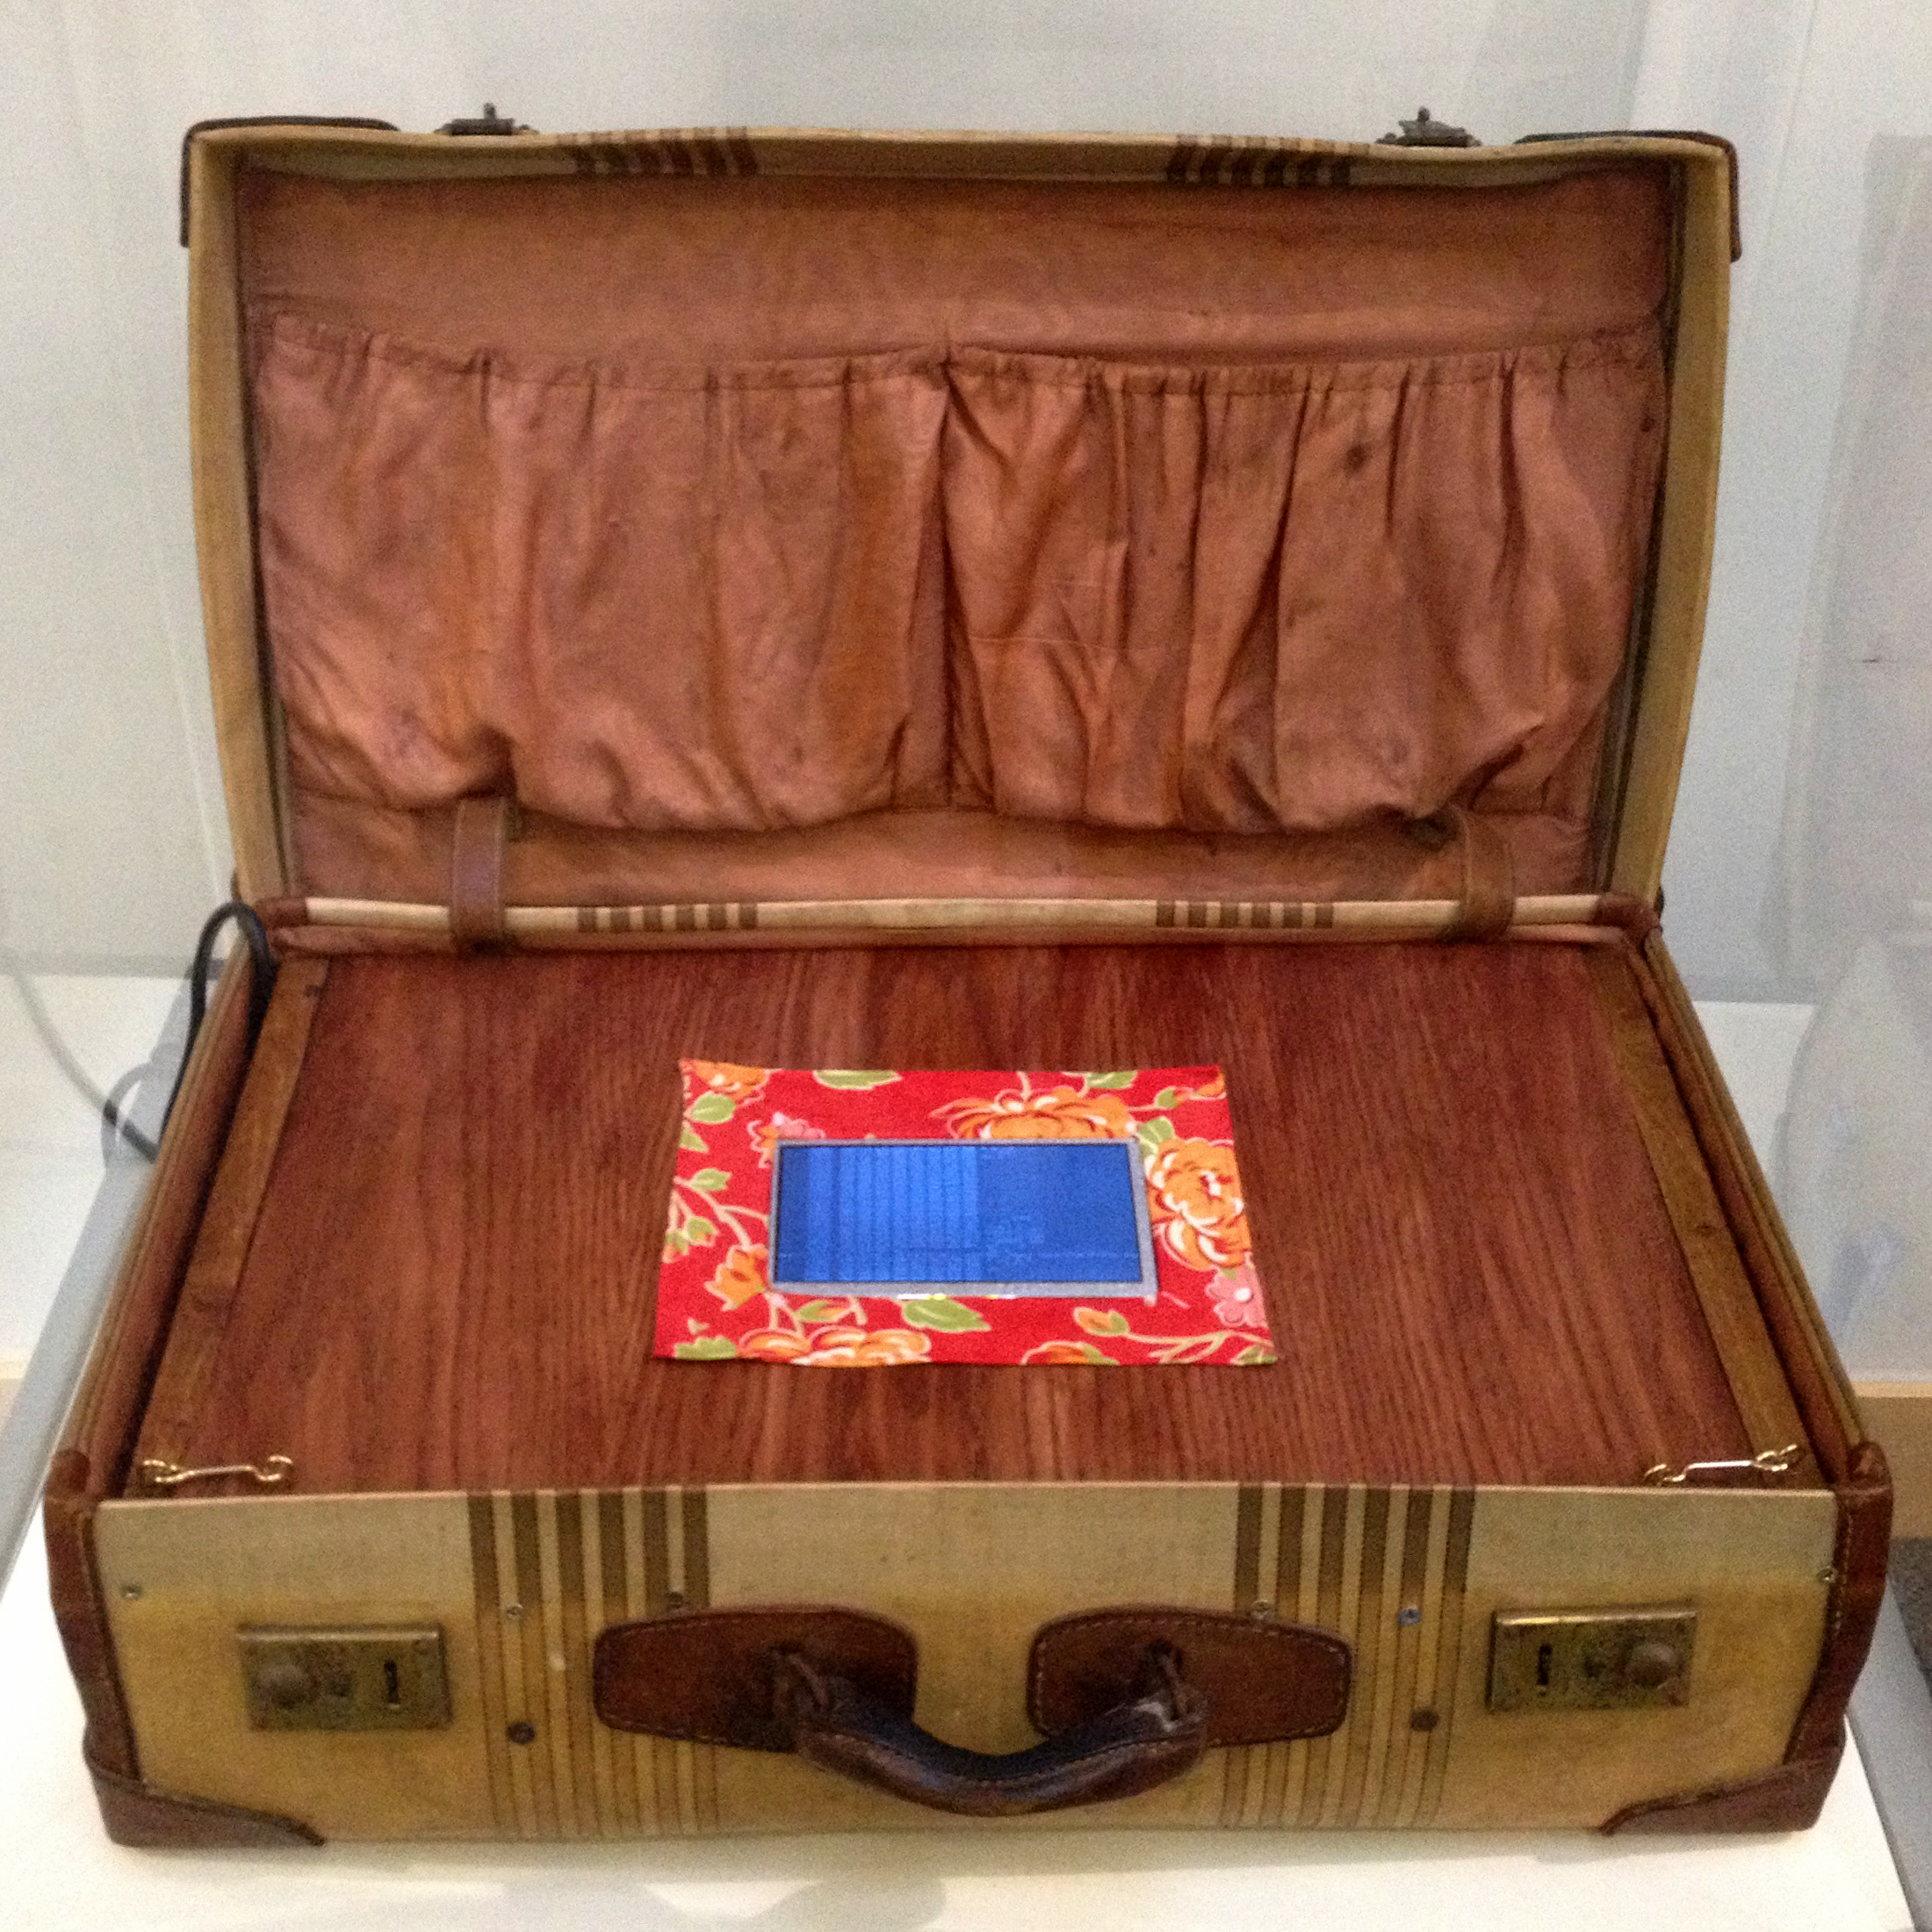 Inside Snowden's Suitcase